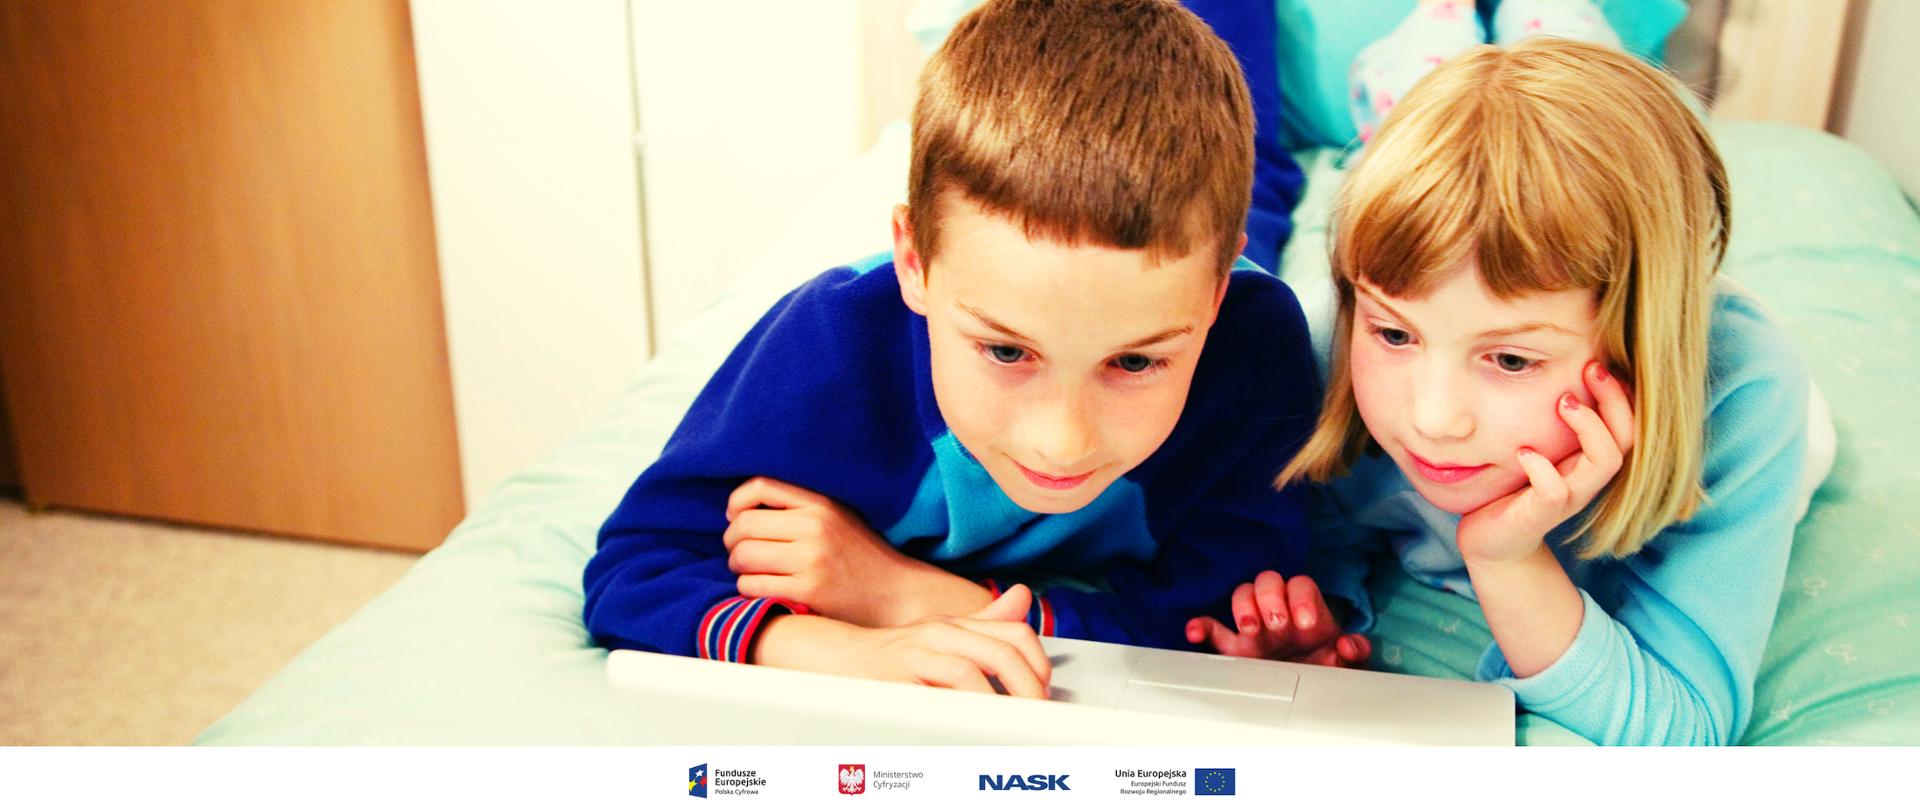 Na zdjęciu widać chłopca i dziewczynkę posługujących się laptopem. Na dole zdjęcia umieszczone są logotypy: Fundusze Europejskie. Polska Cyfrowa, Ministerstwo Cyfryzacji, NASK oraz Unia Europejska. Europejski Fundusz Rozwoju Regionalnego. 